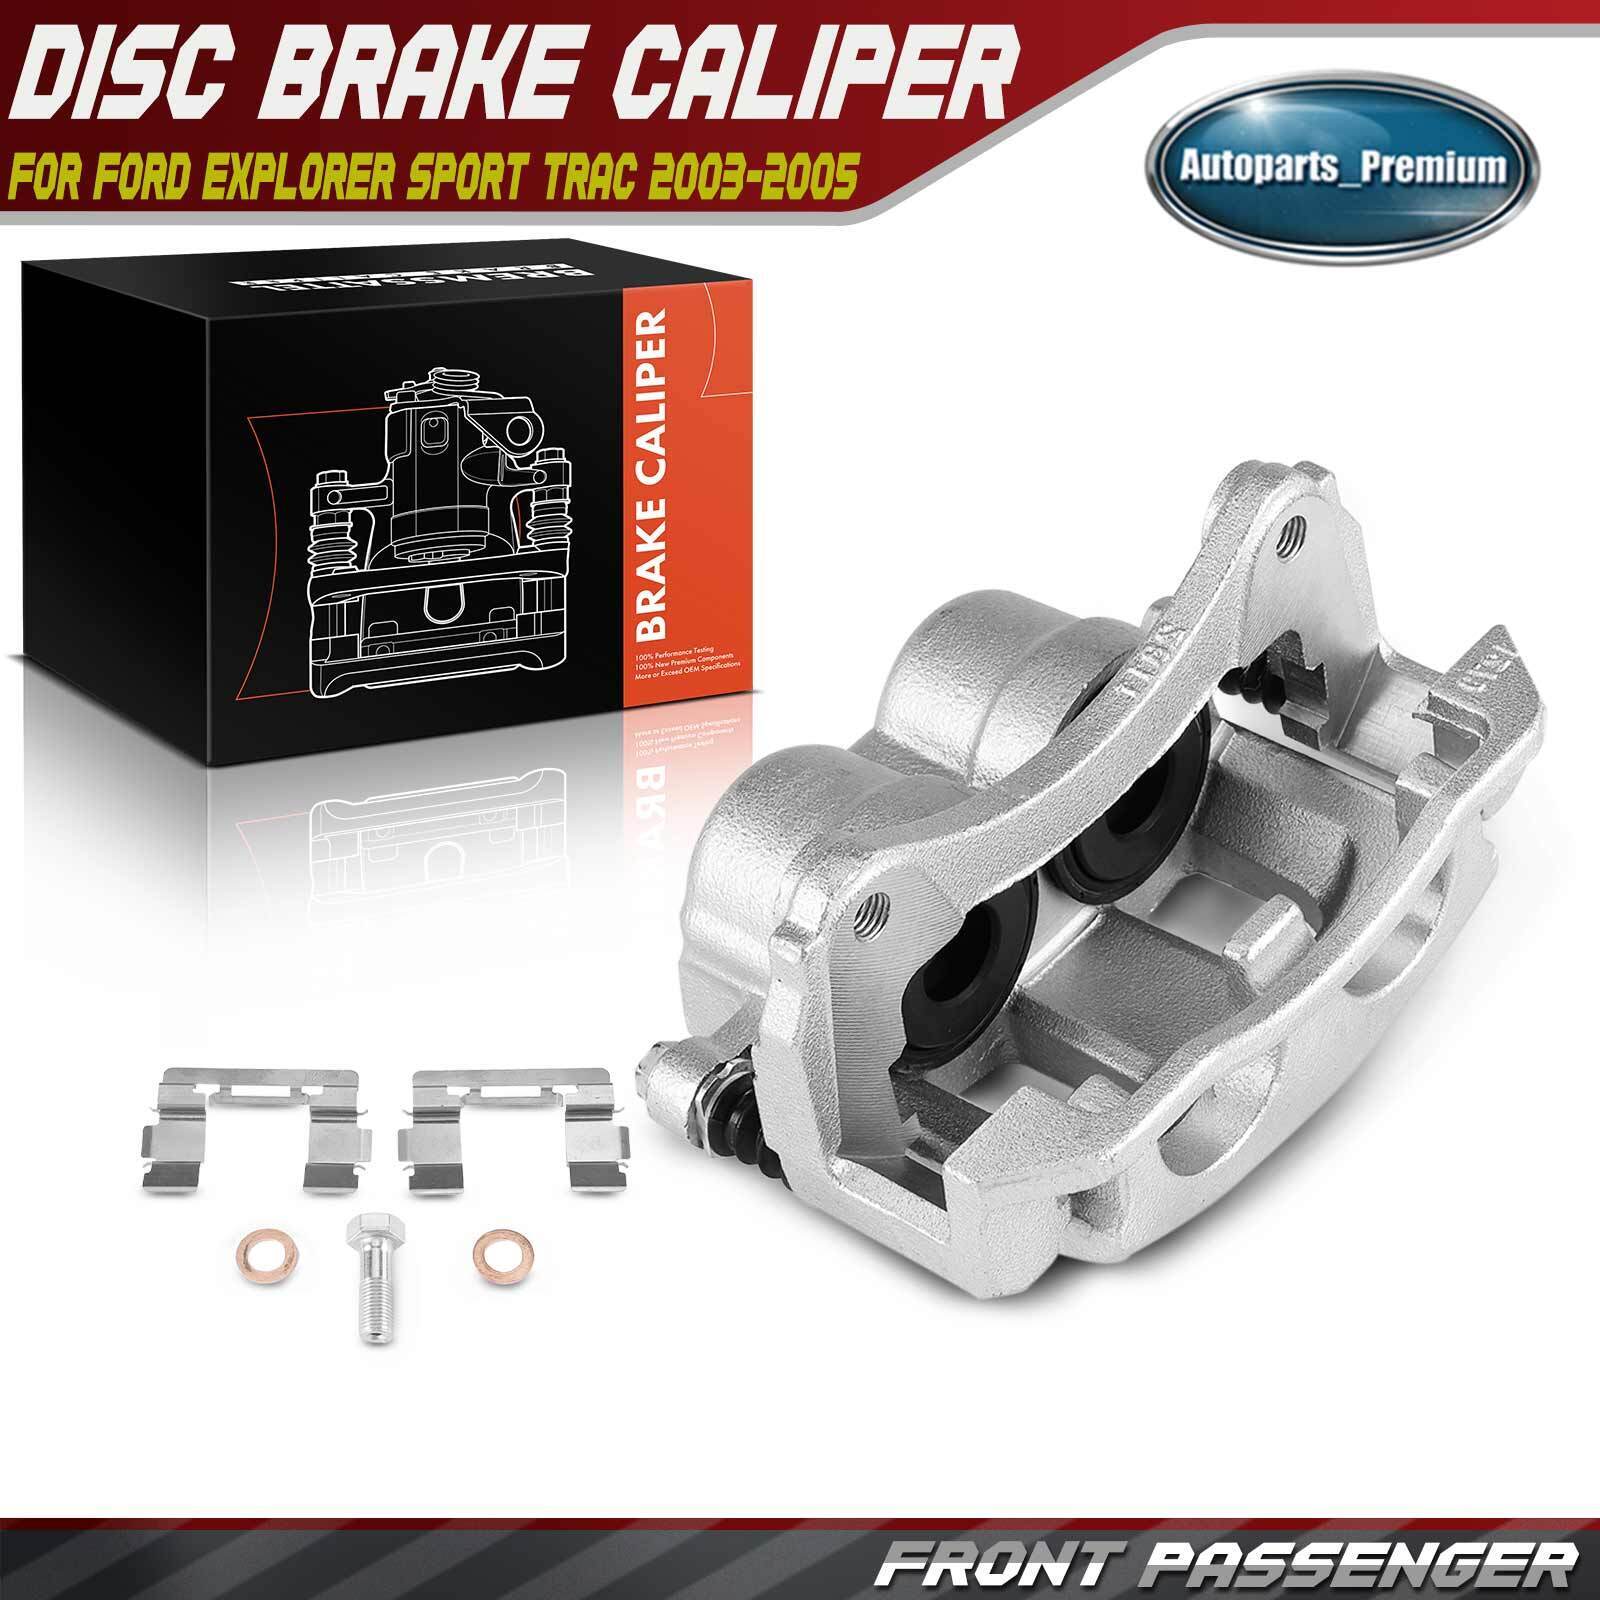 Front Passenger Disc Brake Caliper w/ Bracket for Ford Explorer Sport Trac 03-05